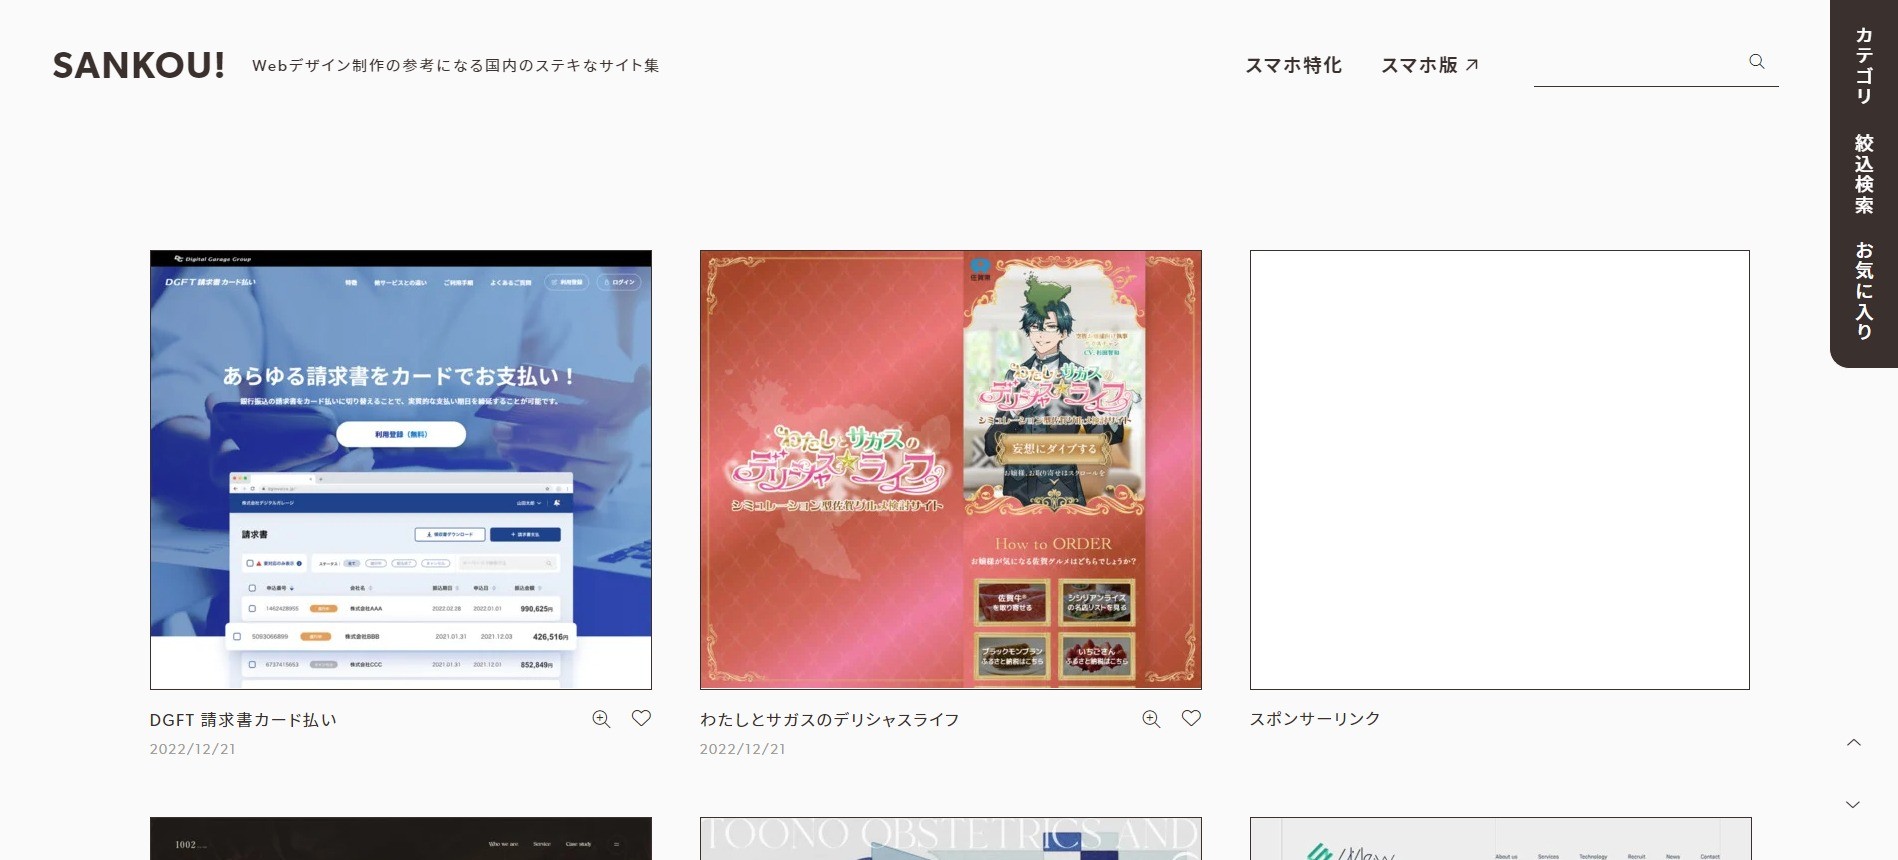 インフォグラフィックの例をまとめたサイト　SANKOU!